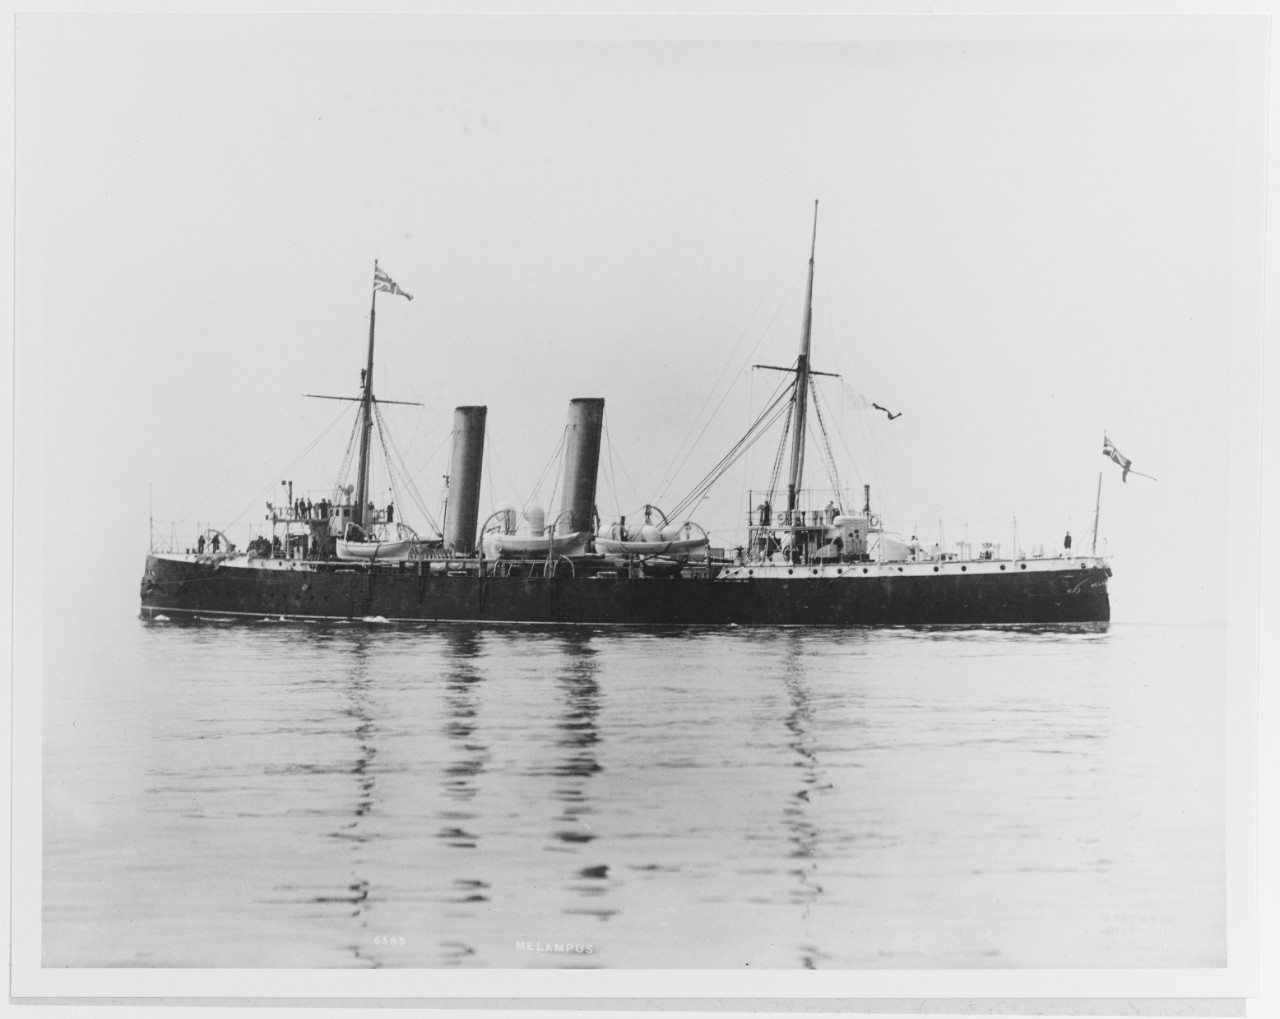 MELAMPUS (British cruiser, 1890-1910)